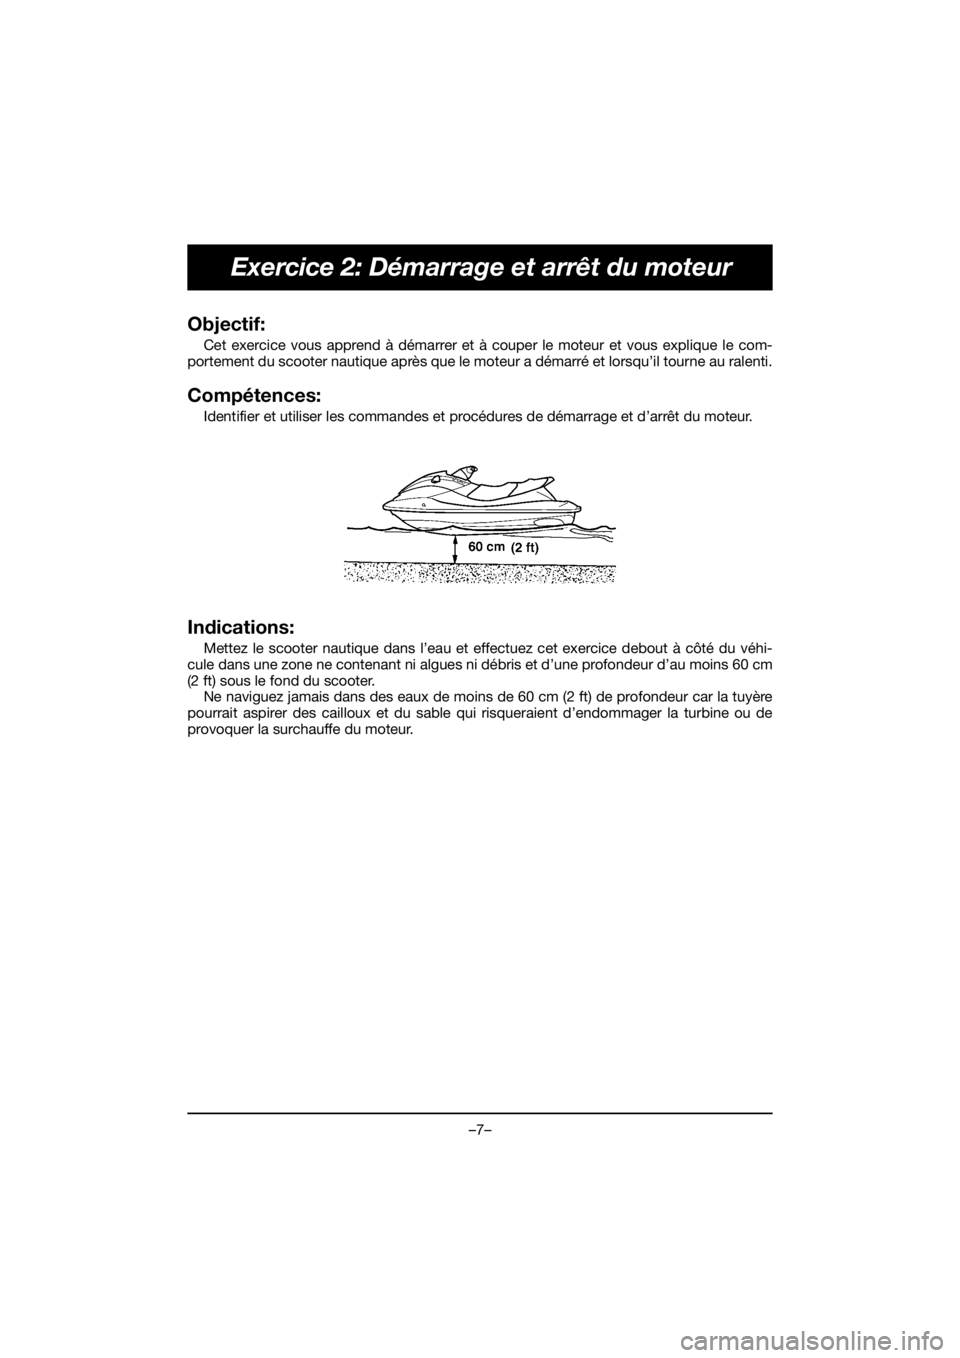 YAMAHA VX CRUISER HO 2020  Notices Demploi (in French) –7–
Exercice 2: Démarrage et arrêt du moteur
Objectif: 
Cet exercice vous apprend à démarrer et à couper le moteur et vous explique le com-
portement du scooter nautique après que le moteur 